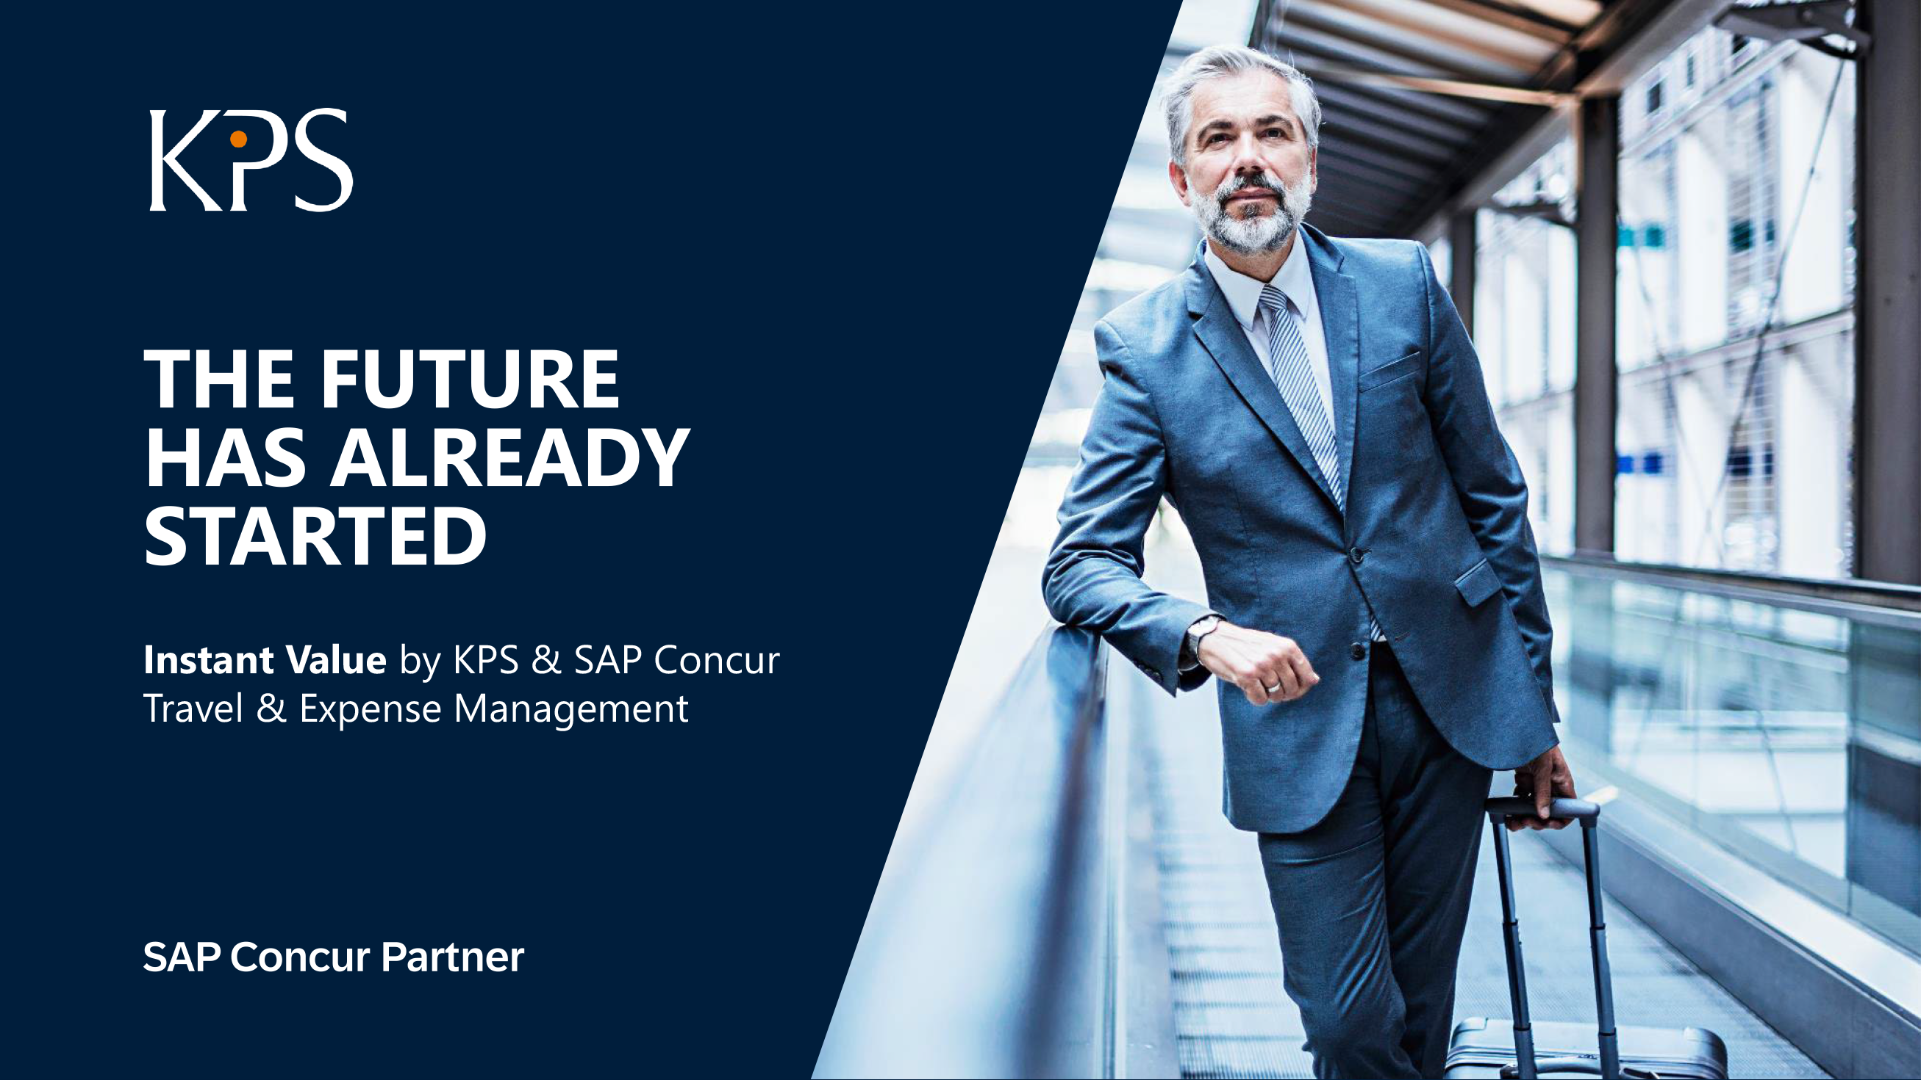 KPS SAP Concur services